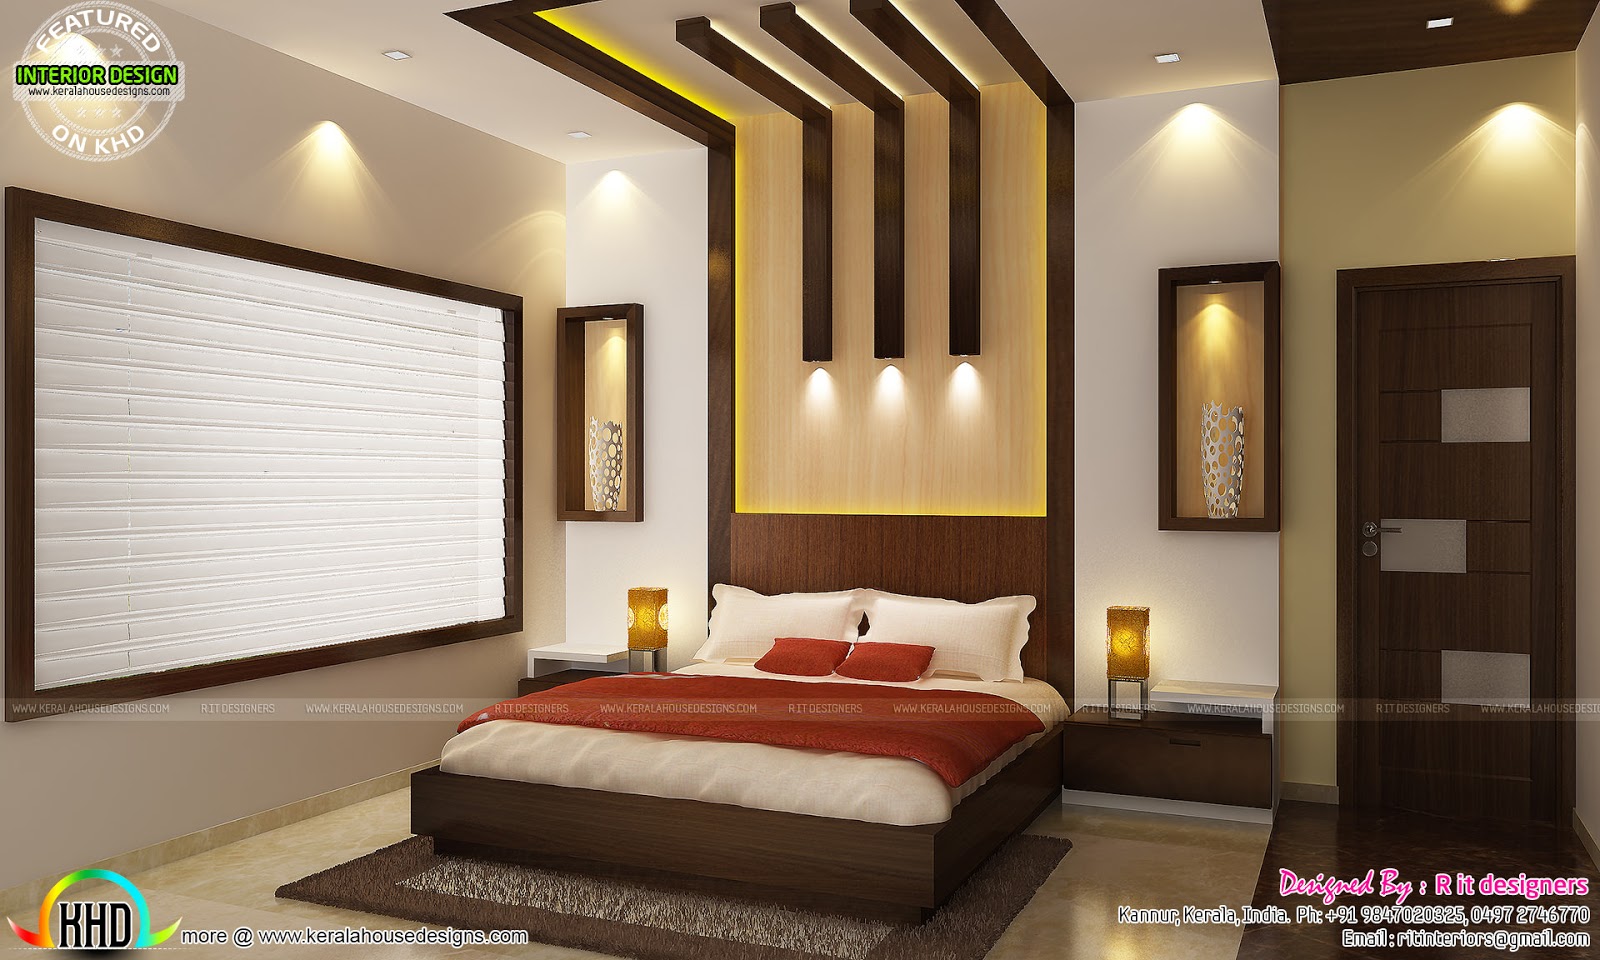 Kitchen, living, bedroom, dining interior decor - Kerala 